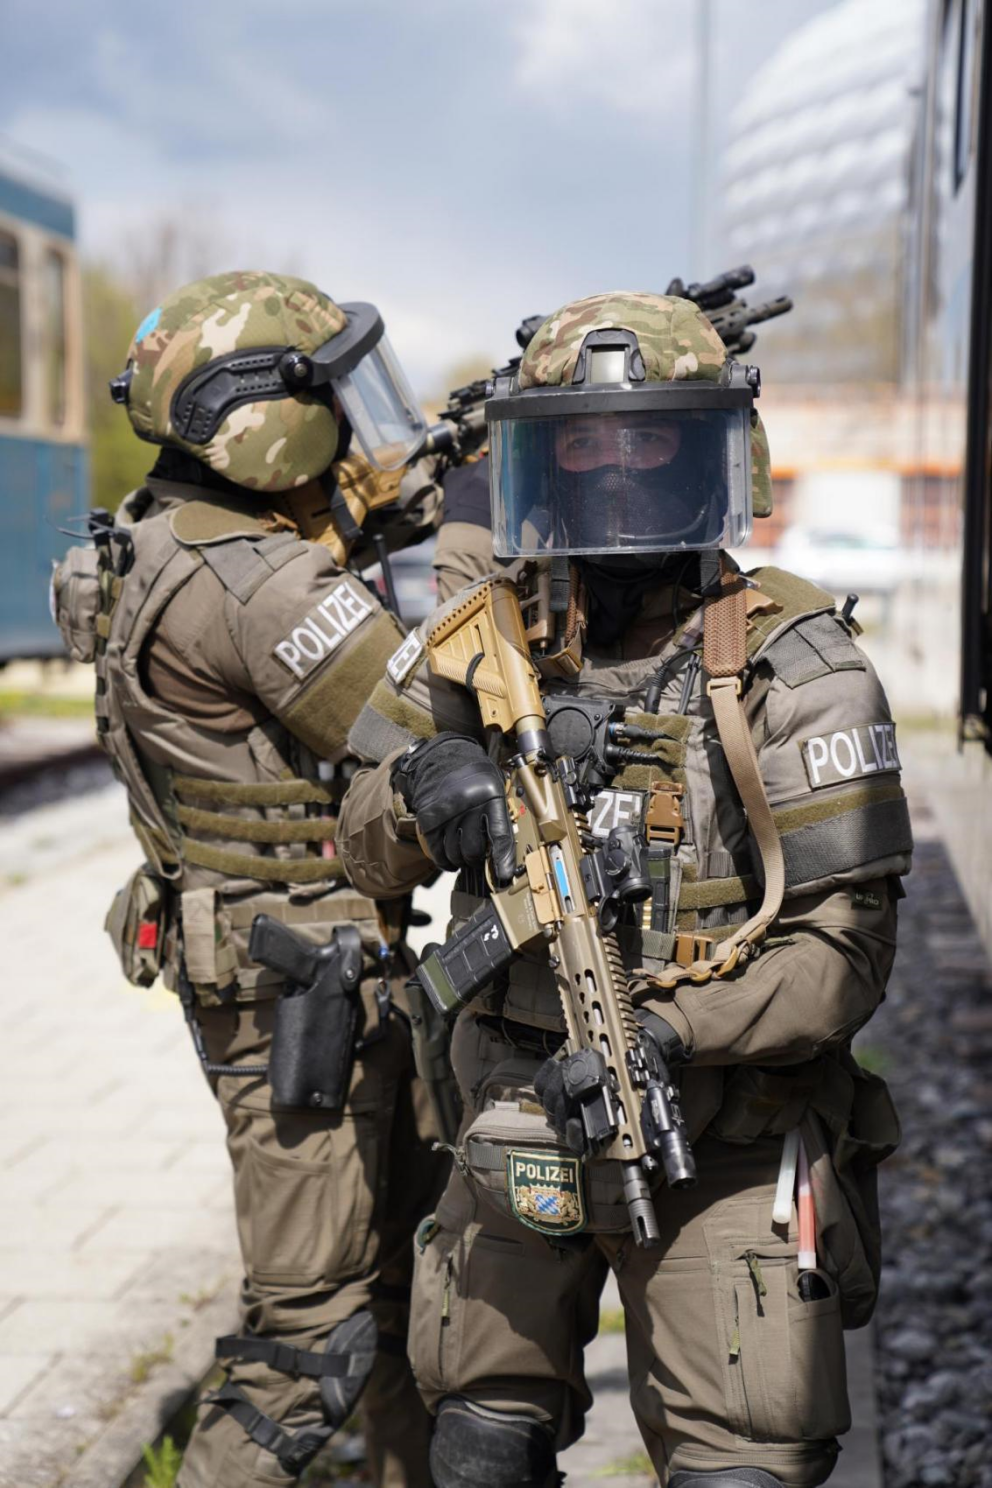 Die Bayerische Polizei - Spezialeinheiten und -kräfte der